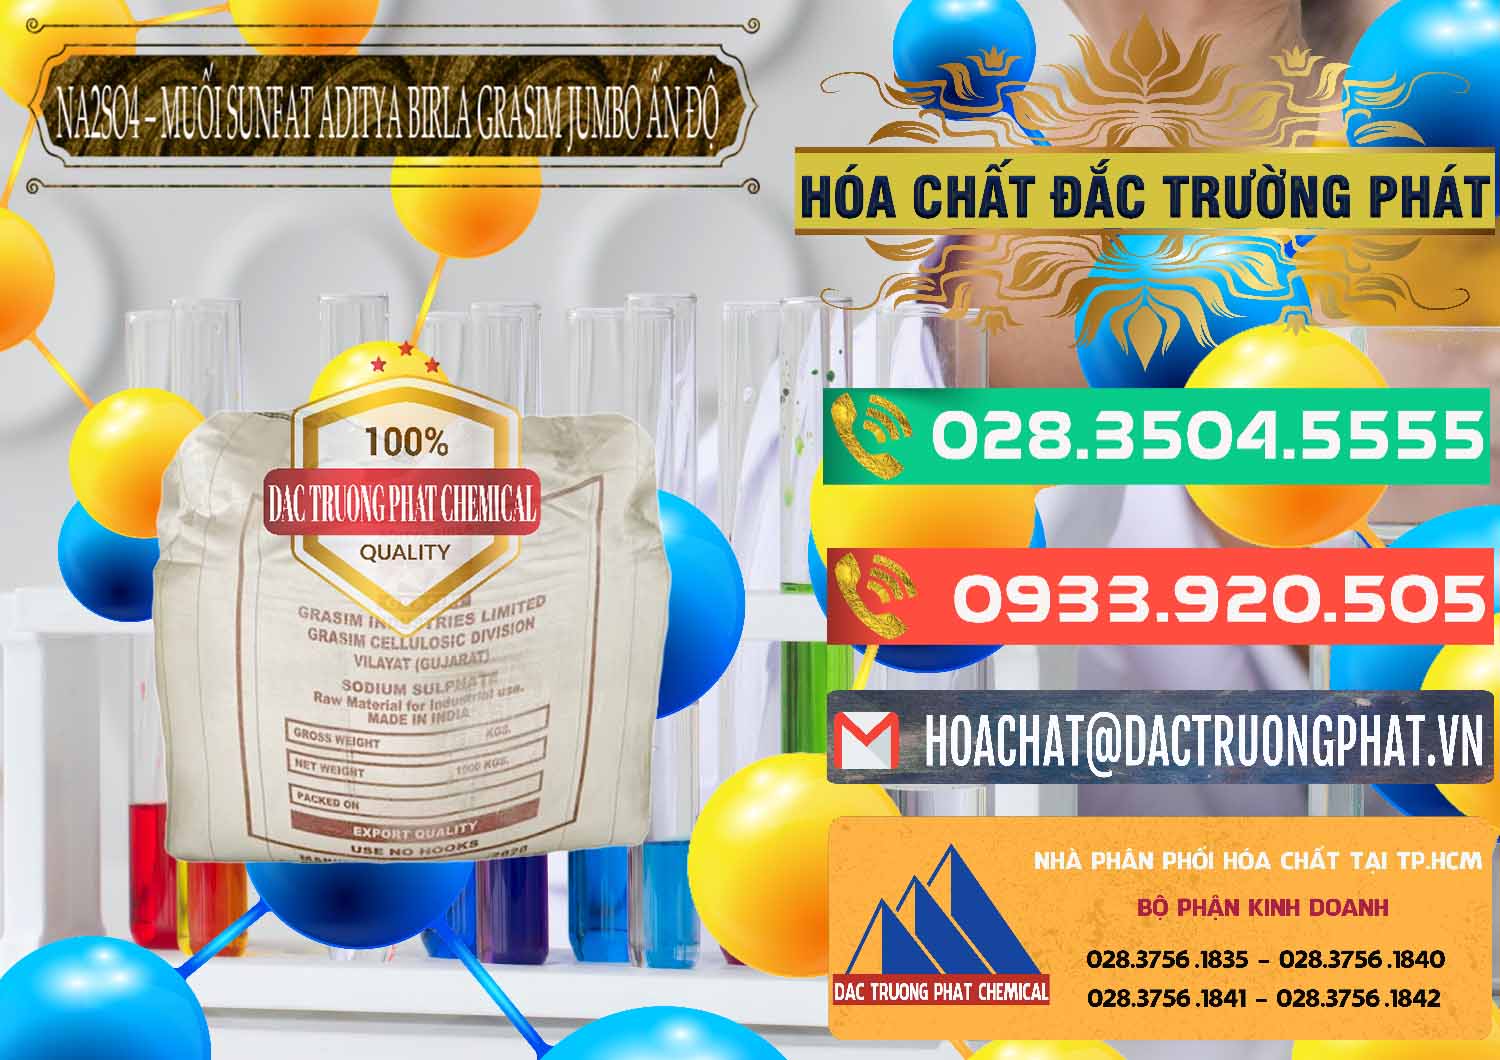 Công ty kinh doanh và bán Sodium Sulphate - Muối Sunfat Na2SO4 Jumbo Bành Aditya Birla Grasim Ấn Độ India - 0357 - Chuyên kinh doanh & cung cấp hóa chất tại TP.HCM - congtyhoachat.com.vn